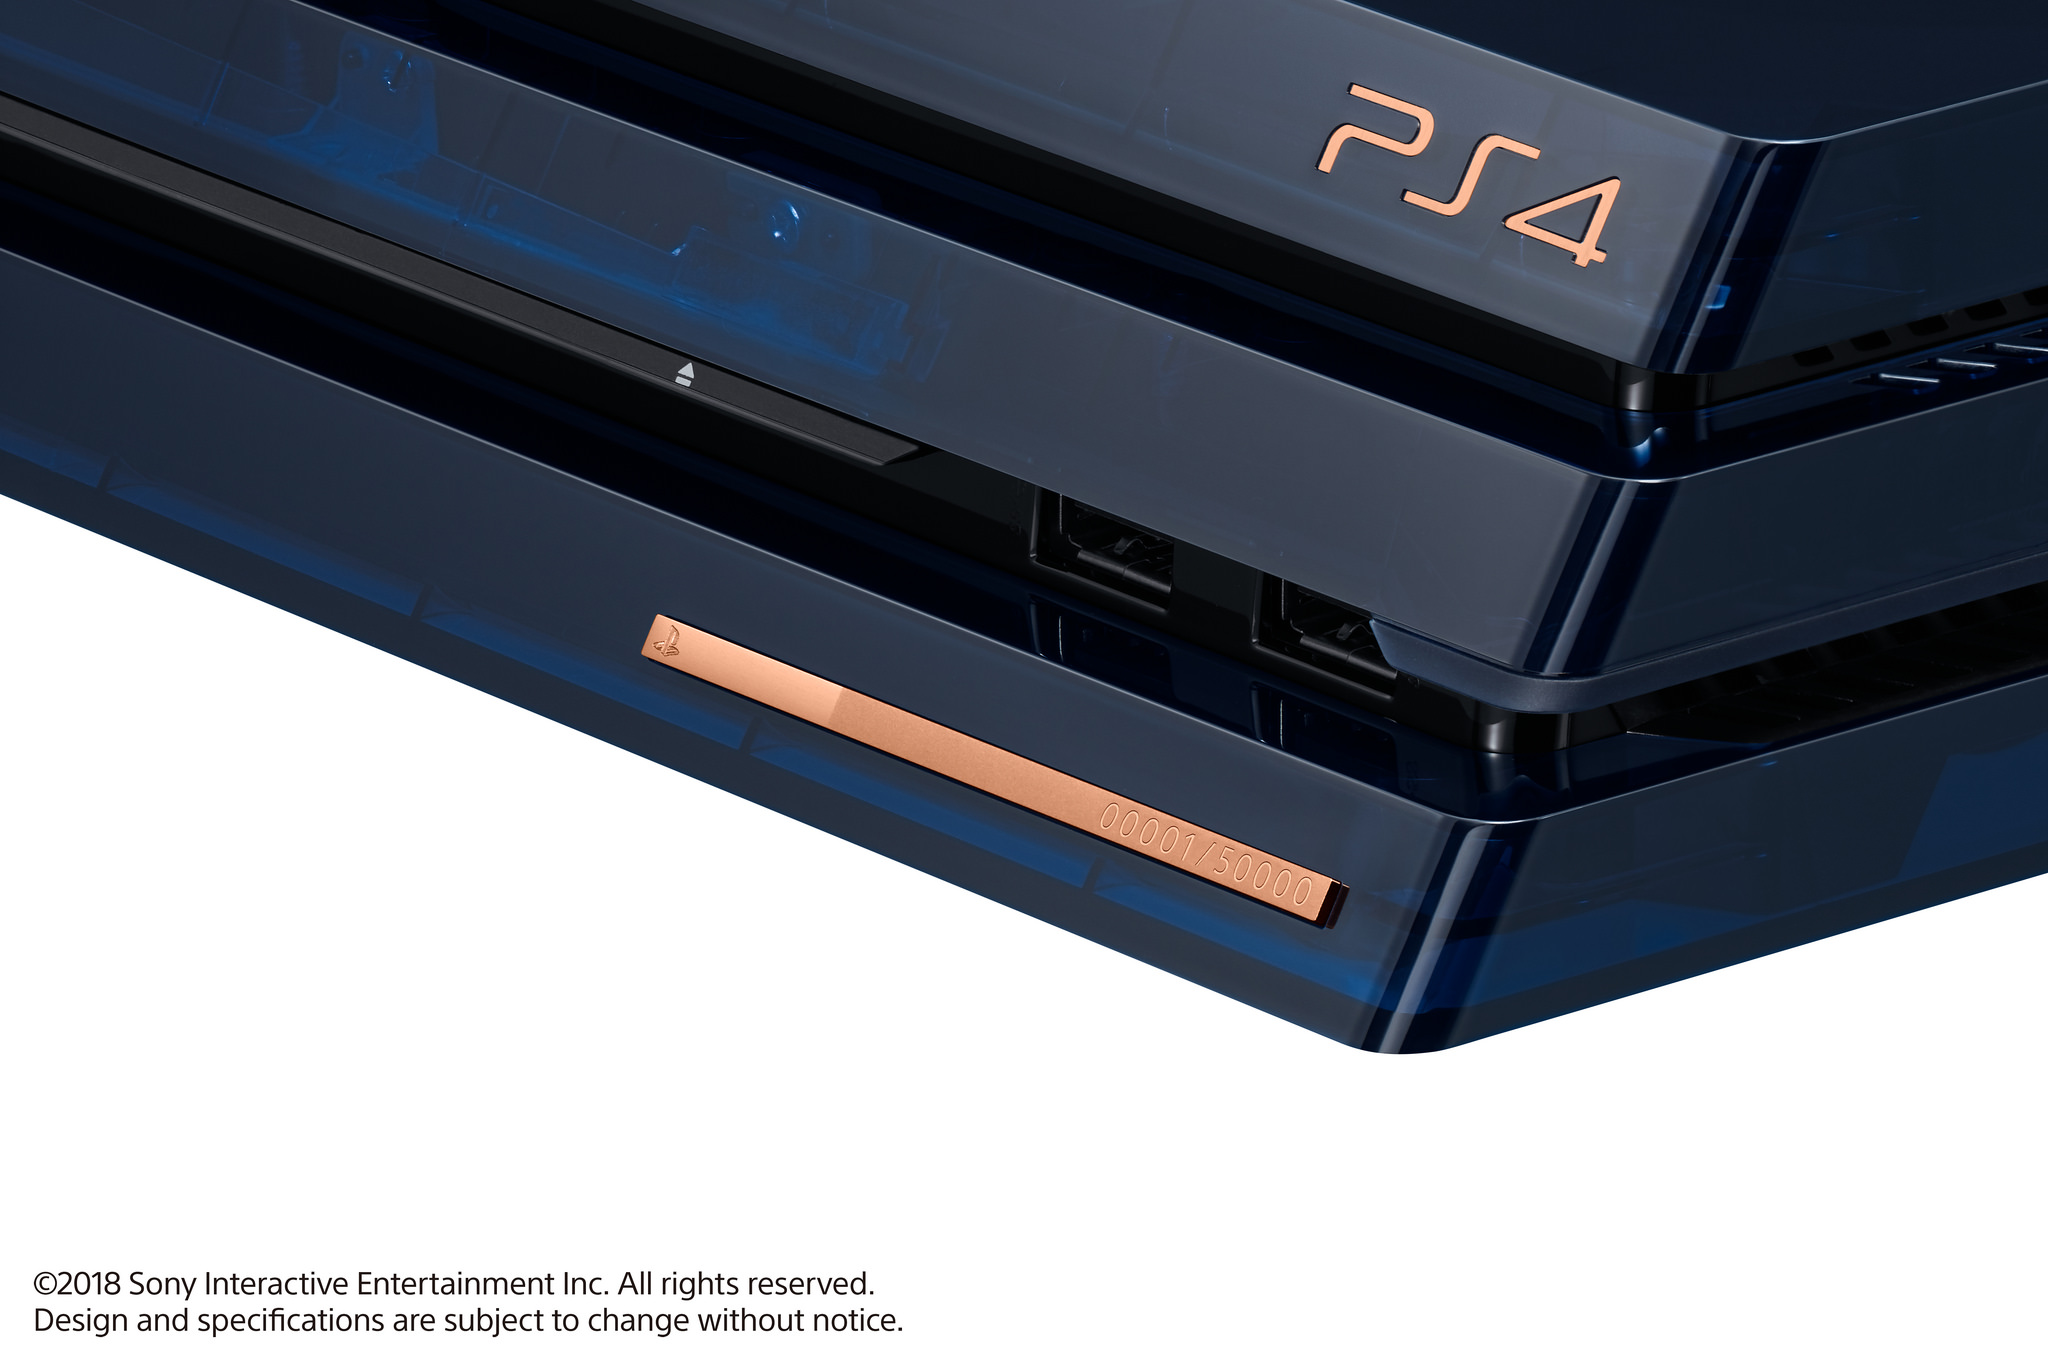 Sony lanza PlayStation 4 Pro, de ultra alta definición